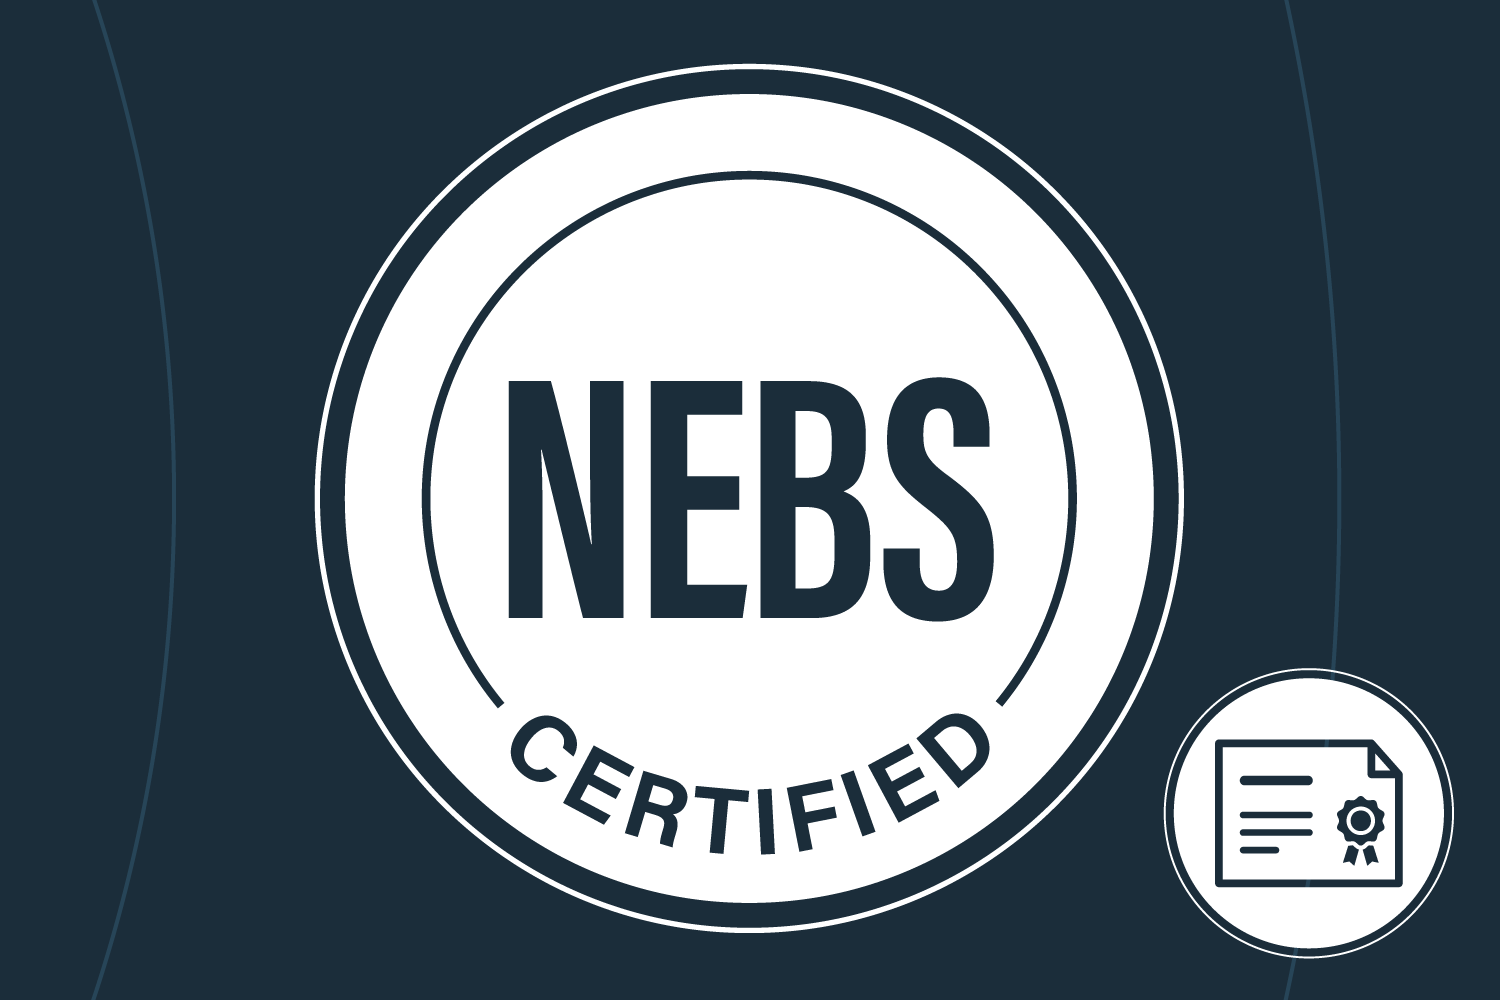 NEBS certified